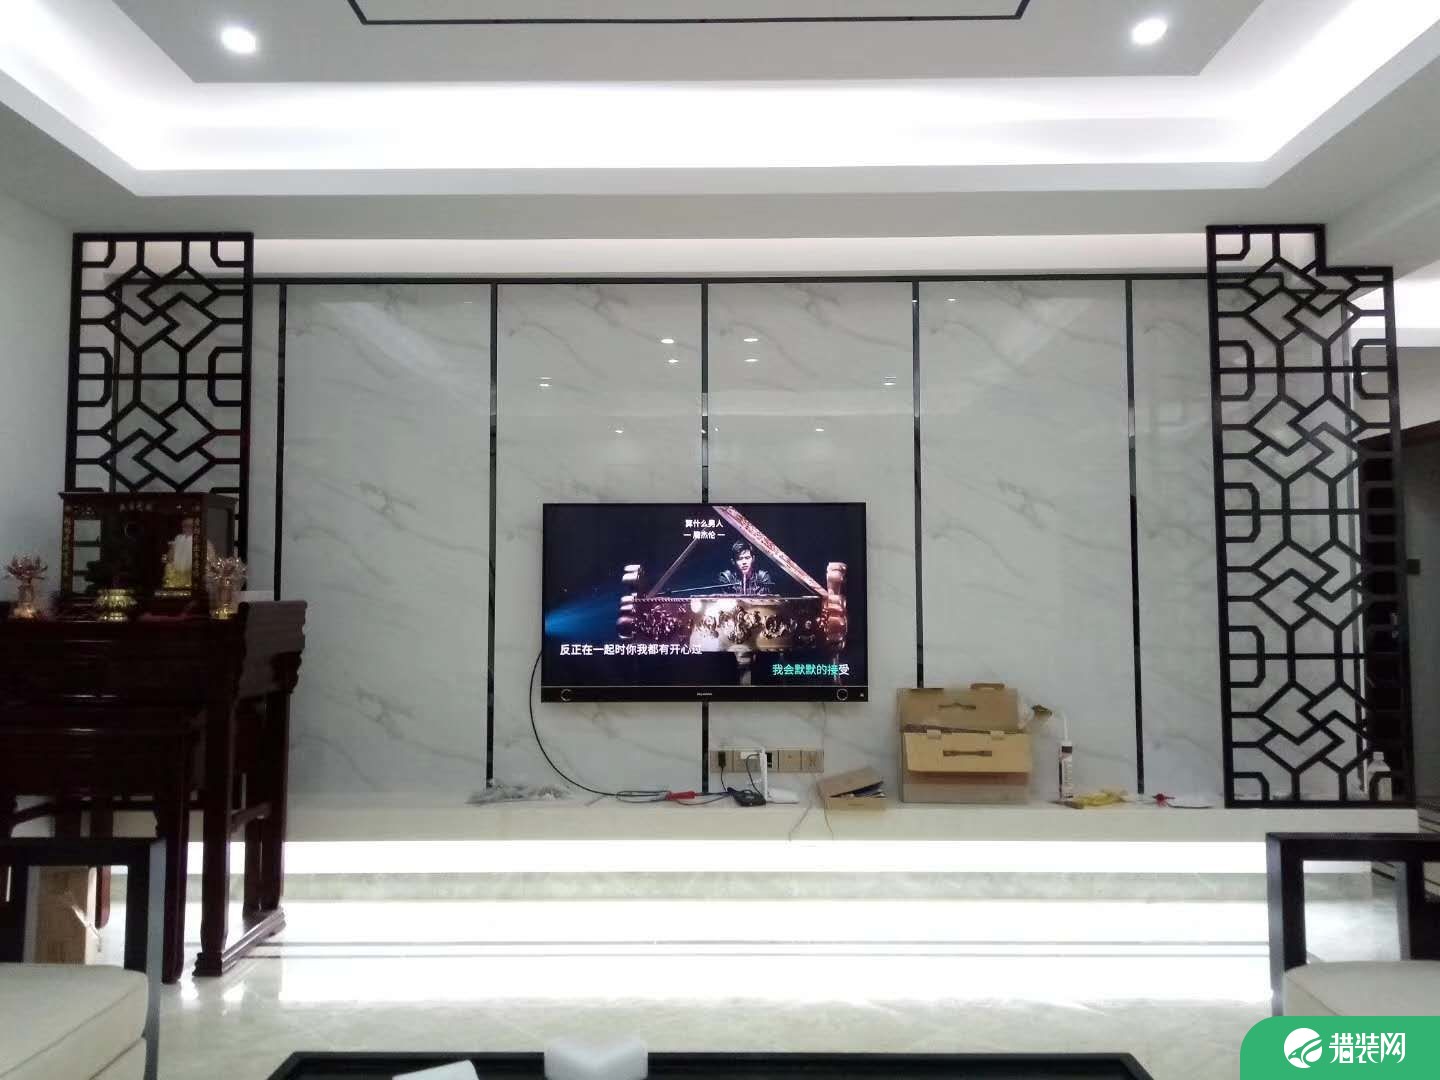 泉州晋江市锦堂雅苑新中式三居室装修效果图